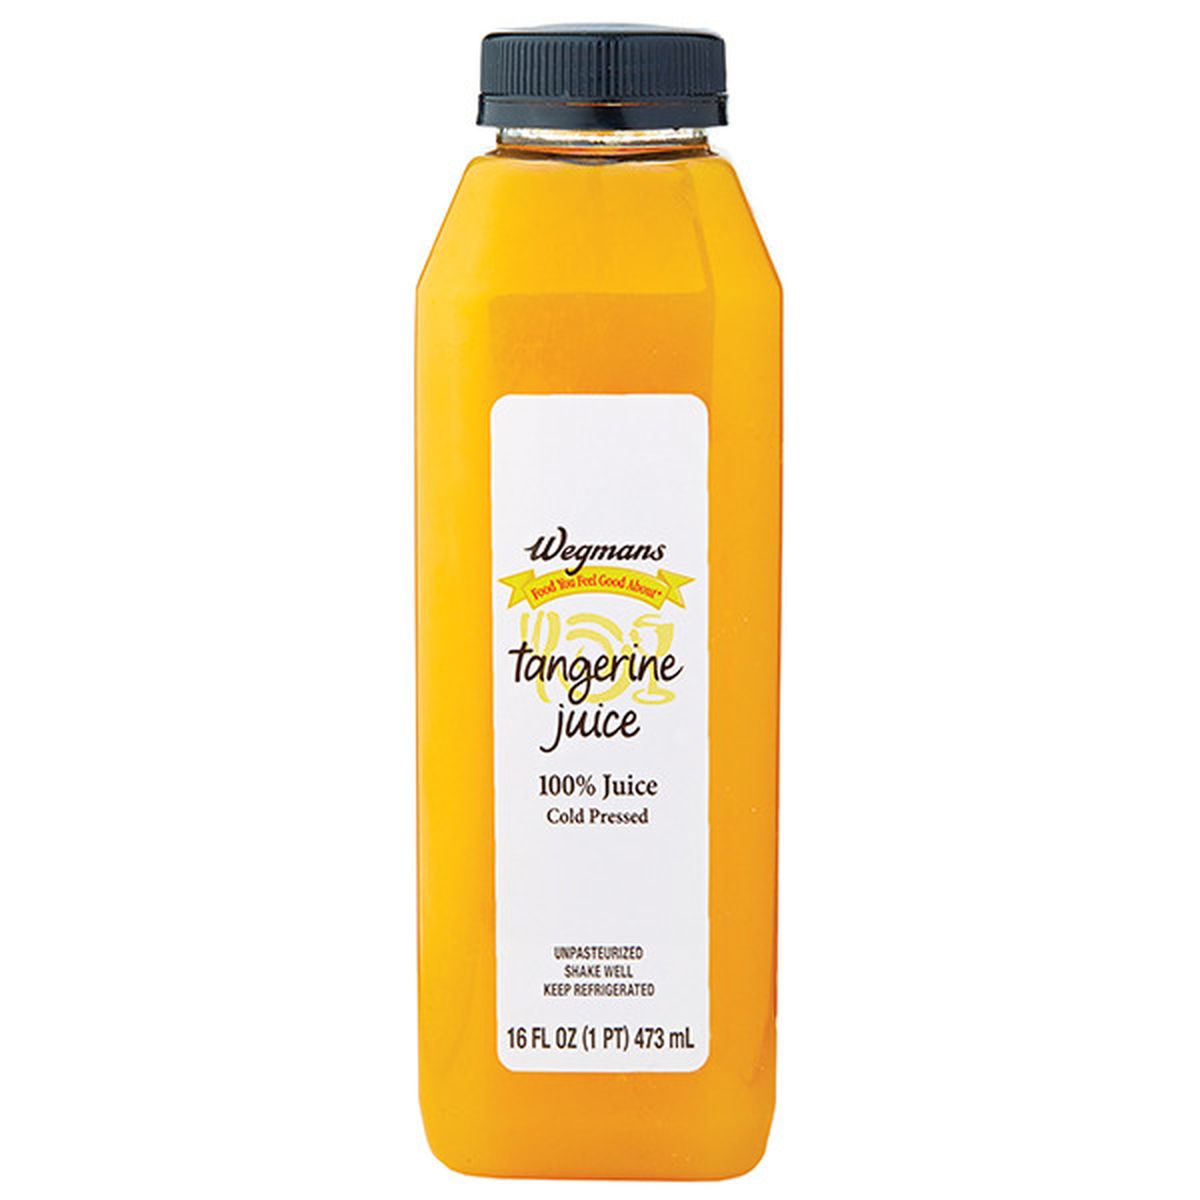 Calories in Wegmans Tangerine Juice